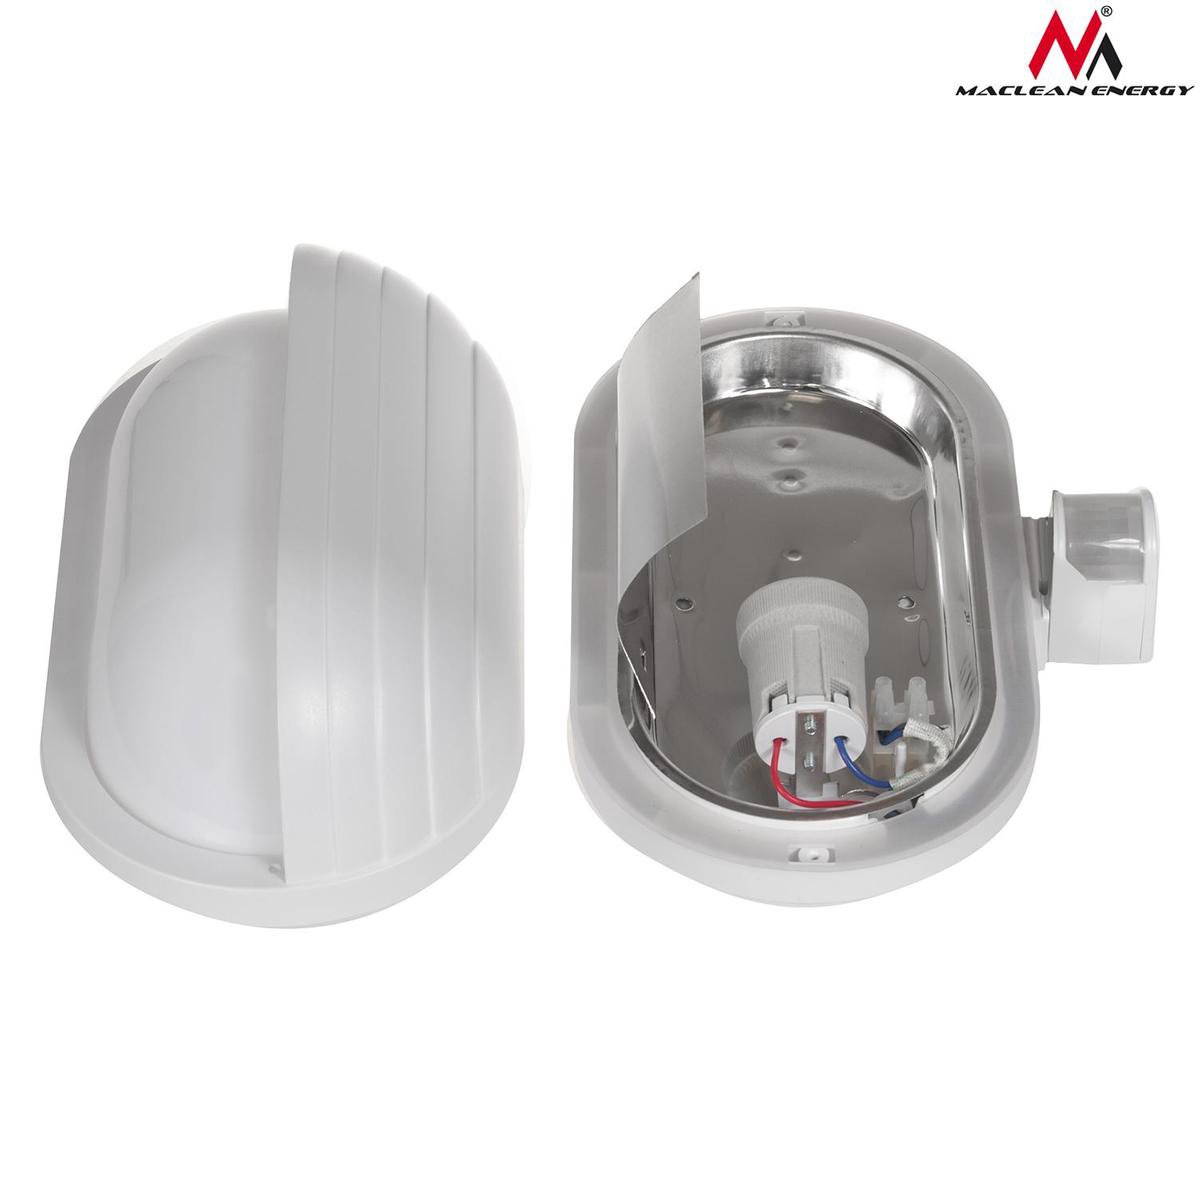 60 W E27 support pour lampe Maclean MCE33 Applique murale avec détecteur de mouvement PIR 180° 